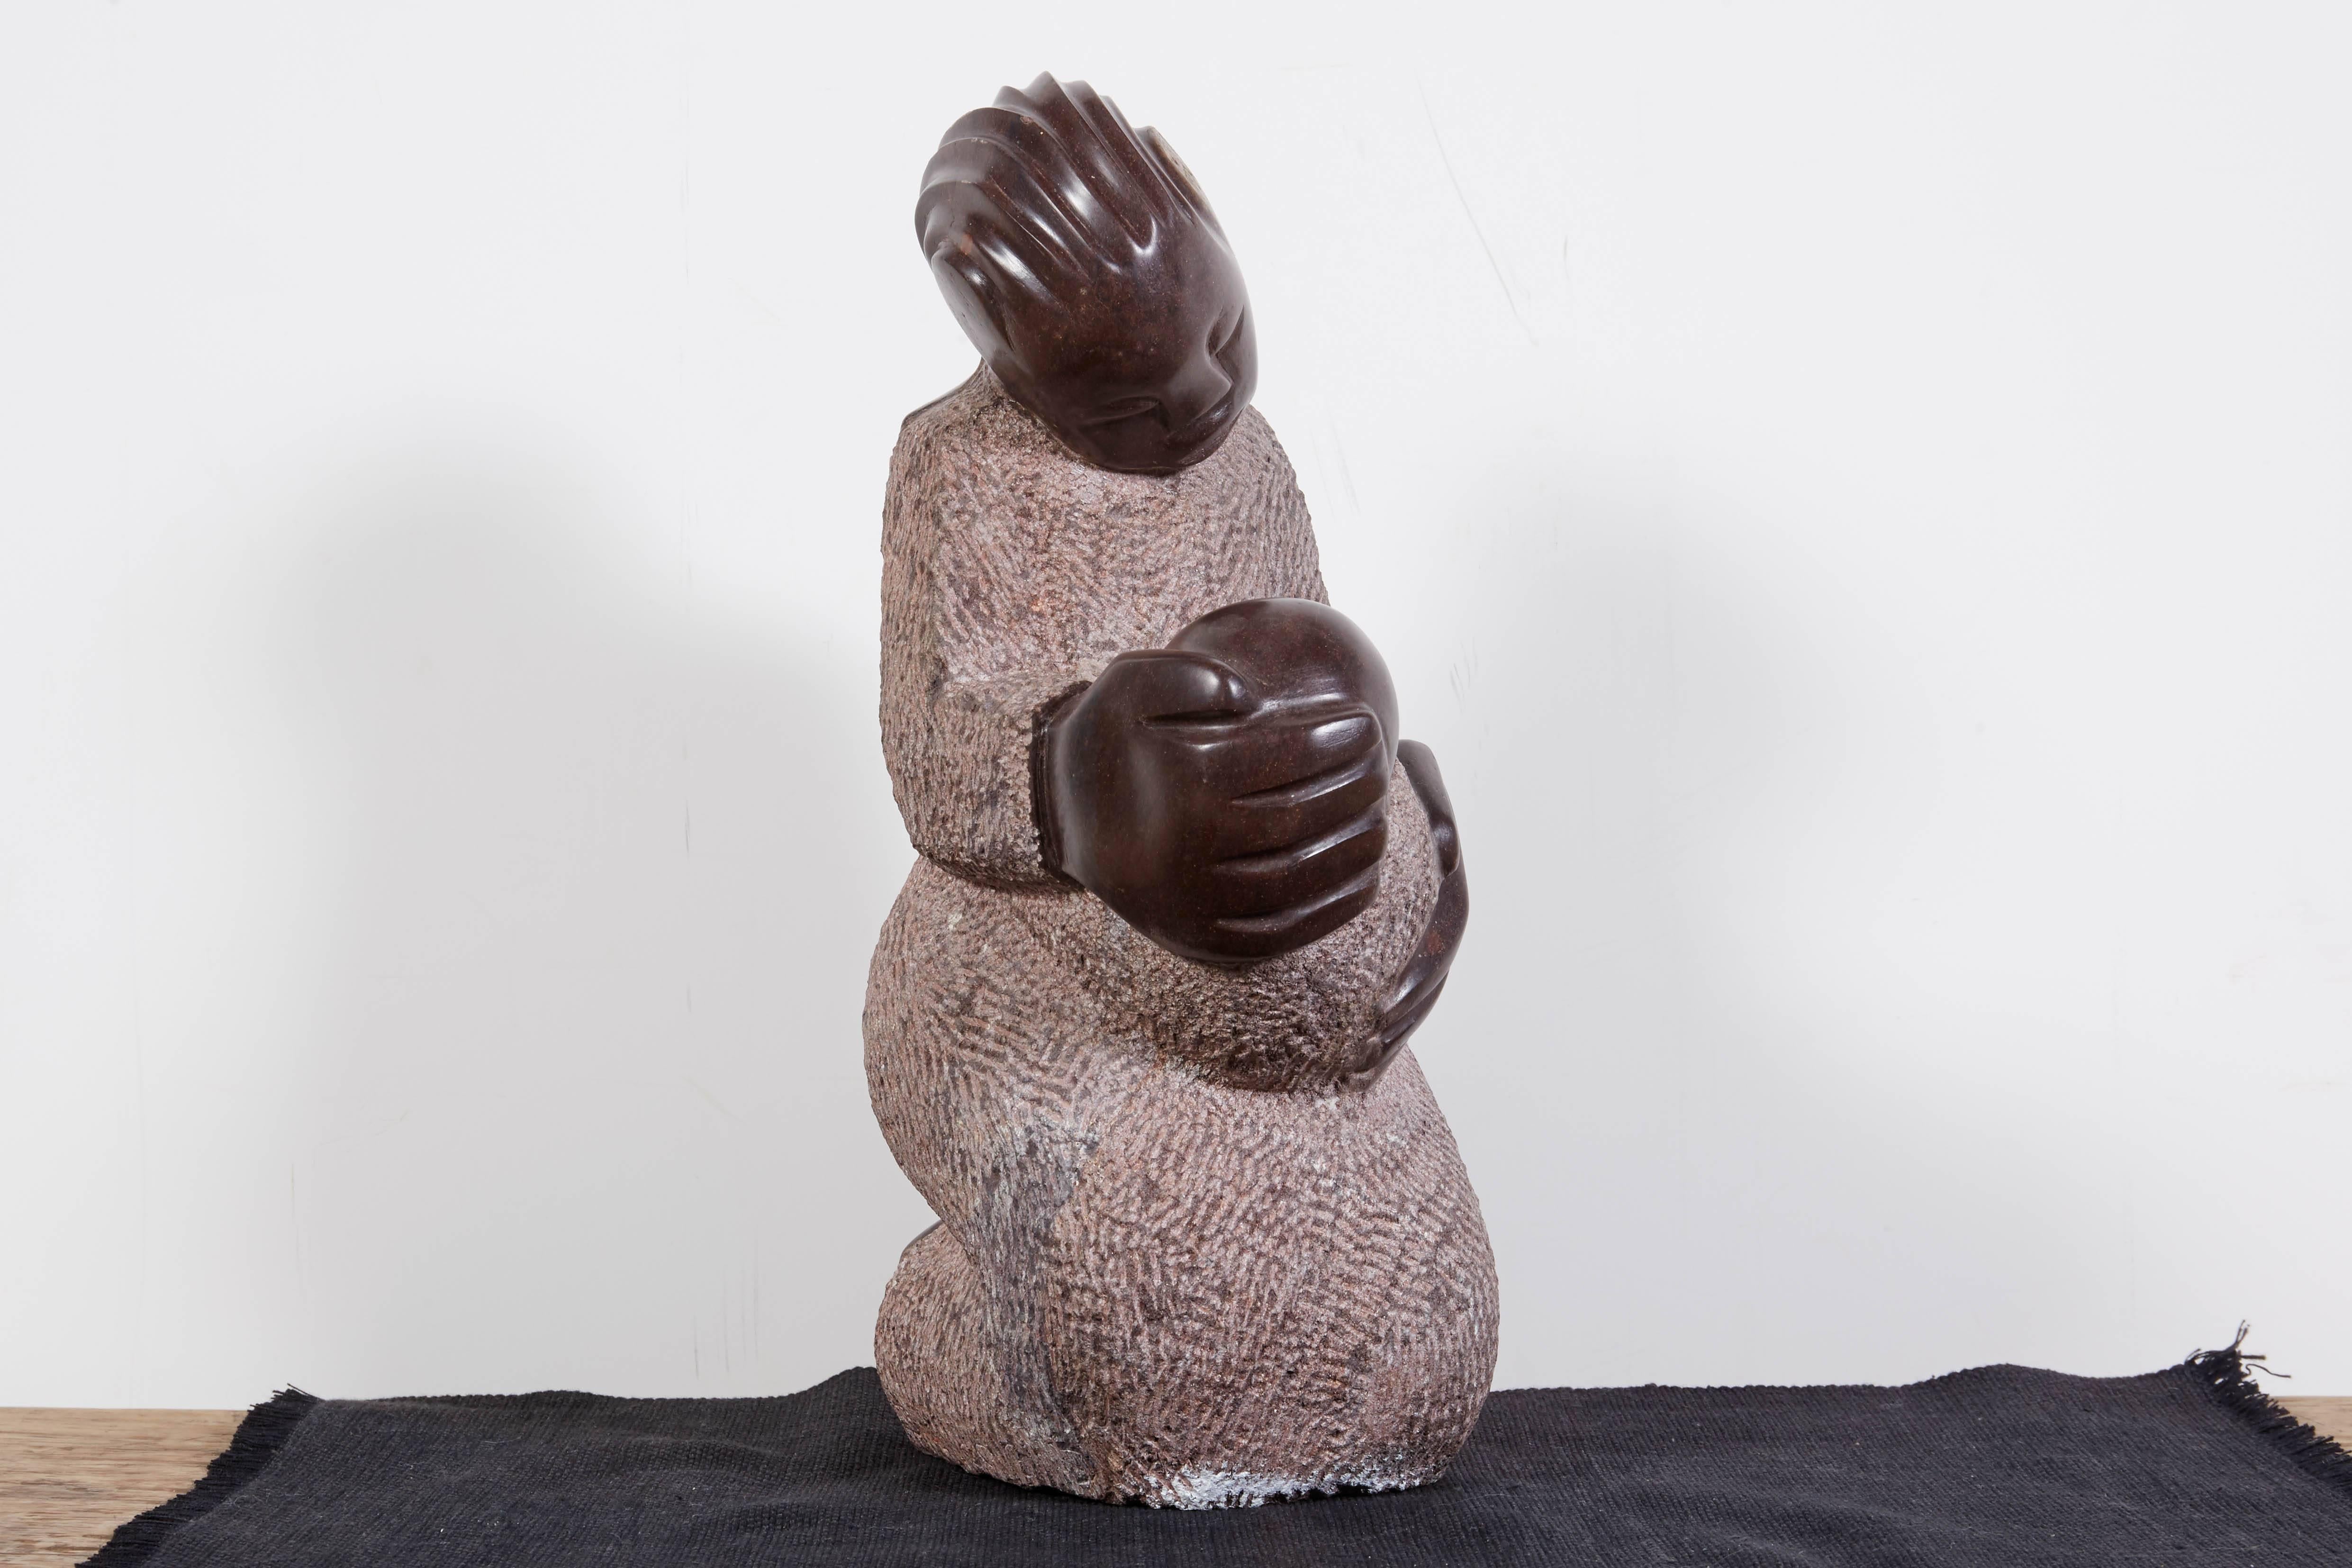 Eine wunderschön geschnitzte Shona-Skulptur aus Simbabwe, die eine Mutter darstellt, die ihr Kind zärtlich in den Arm nimmt. Ein einfaches und bewegendes Werk des Künstlers Tmuk. 
BH113.